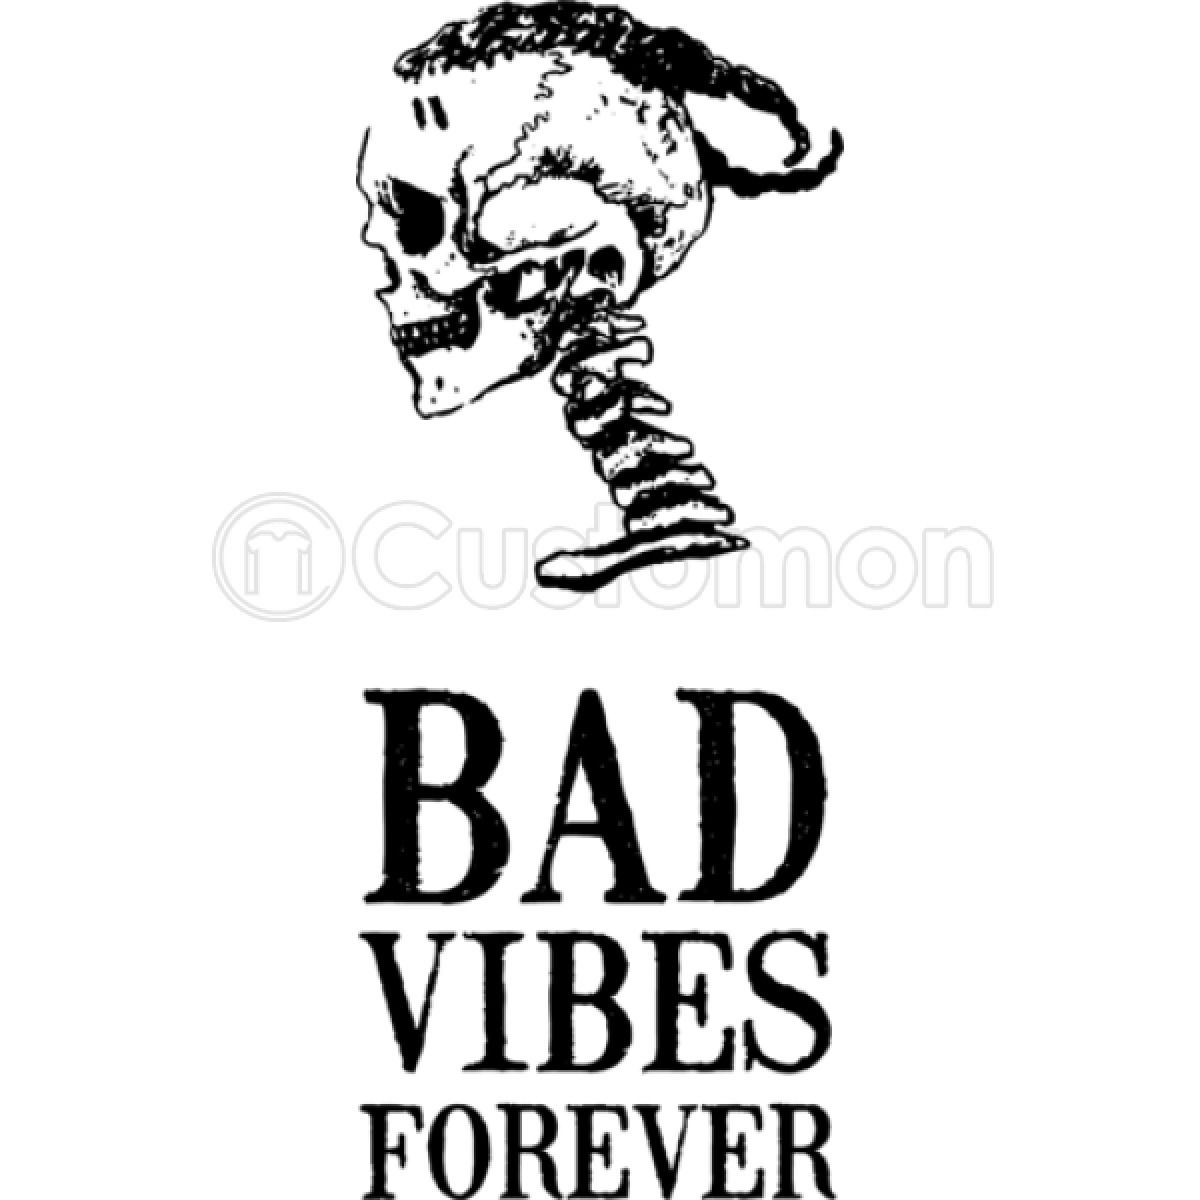 Vibes forever. Bad Vibes Forever. Bad Vibes Forever эскизы. Bad Vibes Forever Tattoo. Bad Vibes Forever тату.